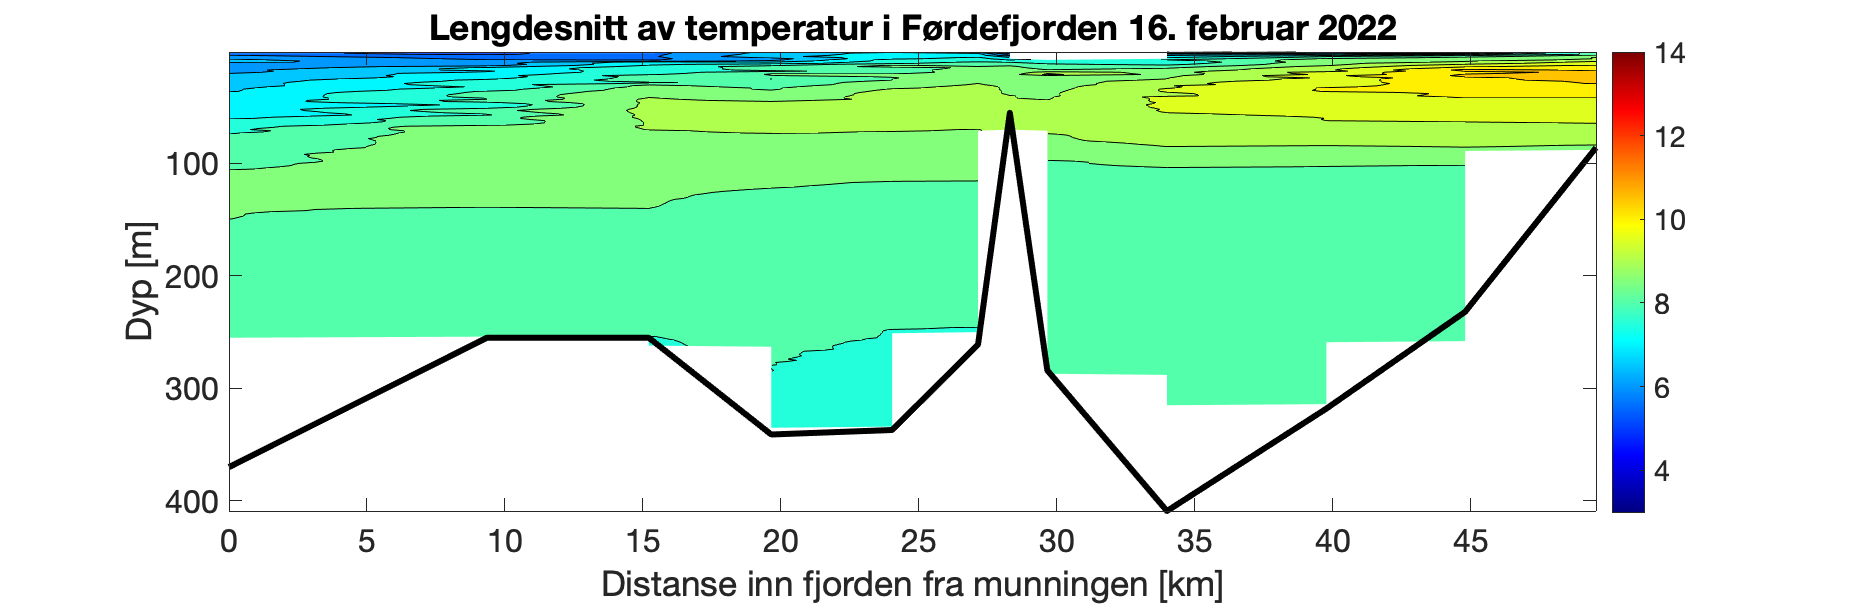 Figuren viser et histogram som illustrer variasjonen i temperatur i vannsøylen (0-350 m) innover i Førdefjorden (0-50 km inn i fjorden). Fargeskalaen representerer temperatur fra 14°C (rødt) til 3°C (fiolett). Det er høyest variasjon i de øverste 80 m med gradvis kaldere overflatevann utover i fjorden, og det er ca. 7,5 – 8,5°C gjennom vannsøylen dypere enn 100 m.